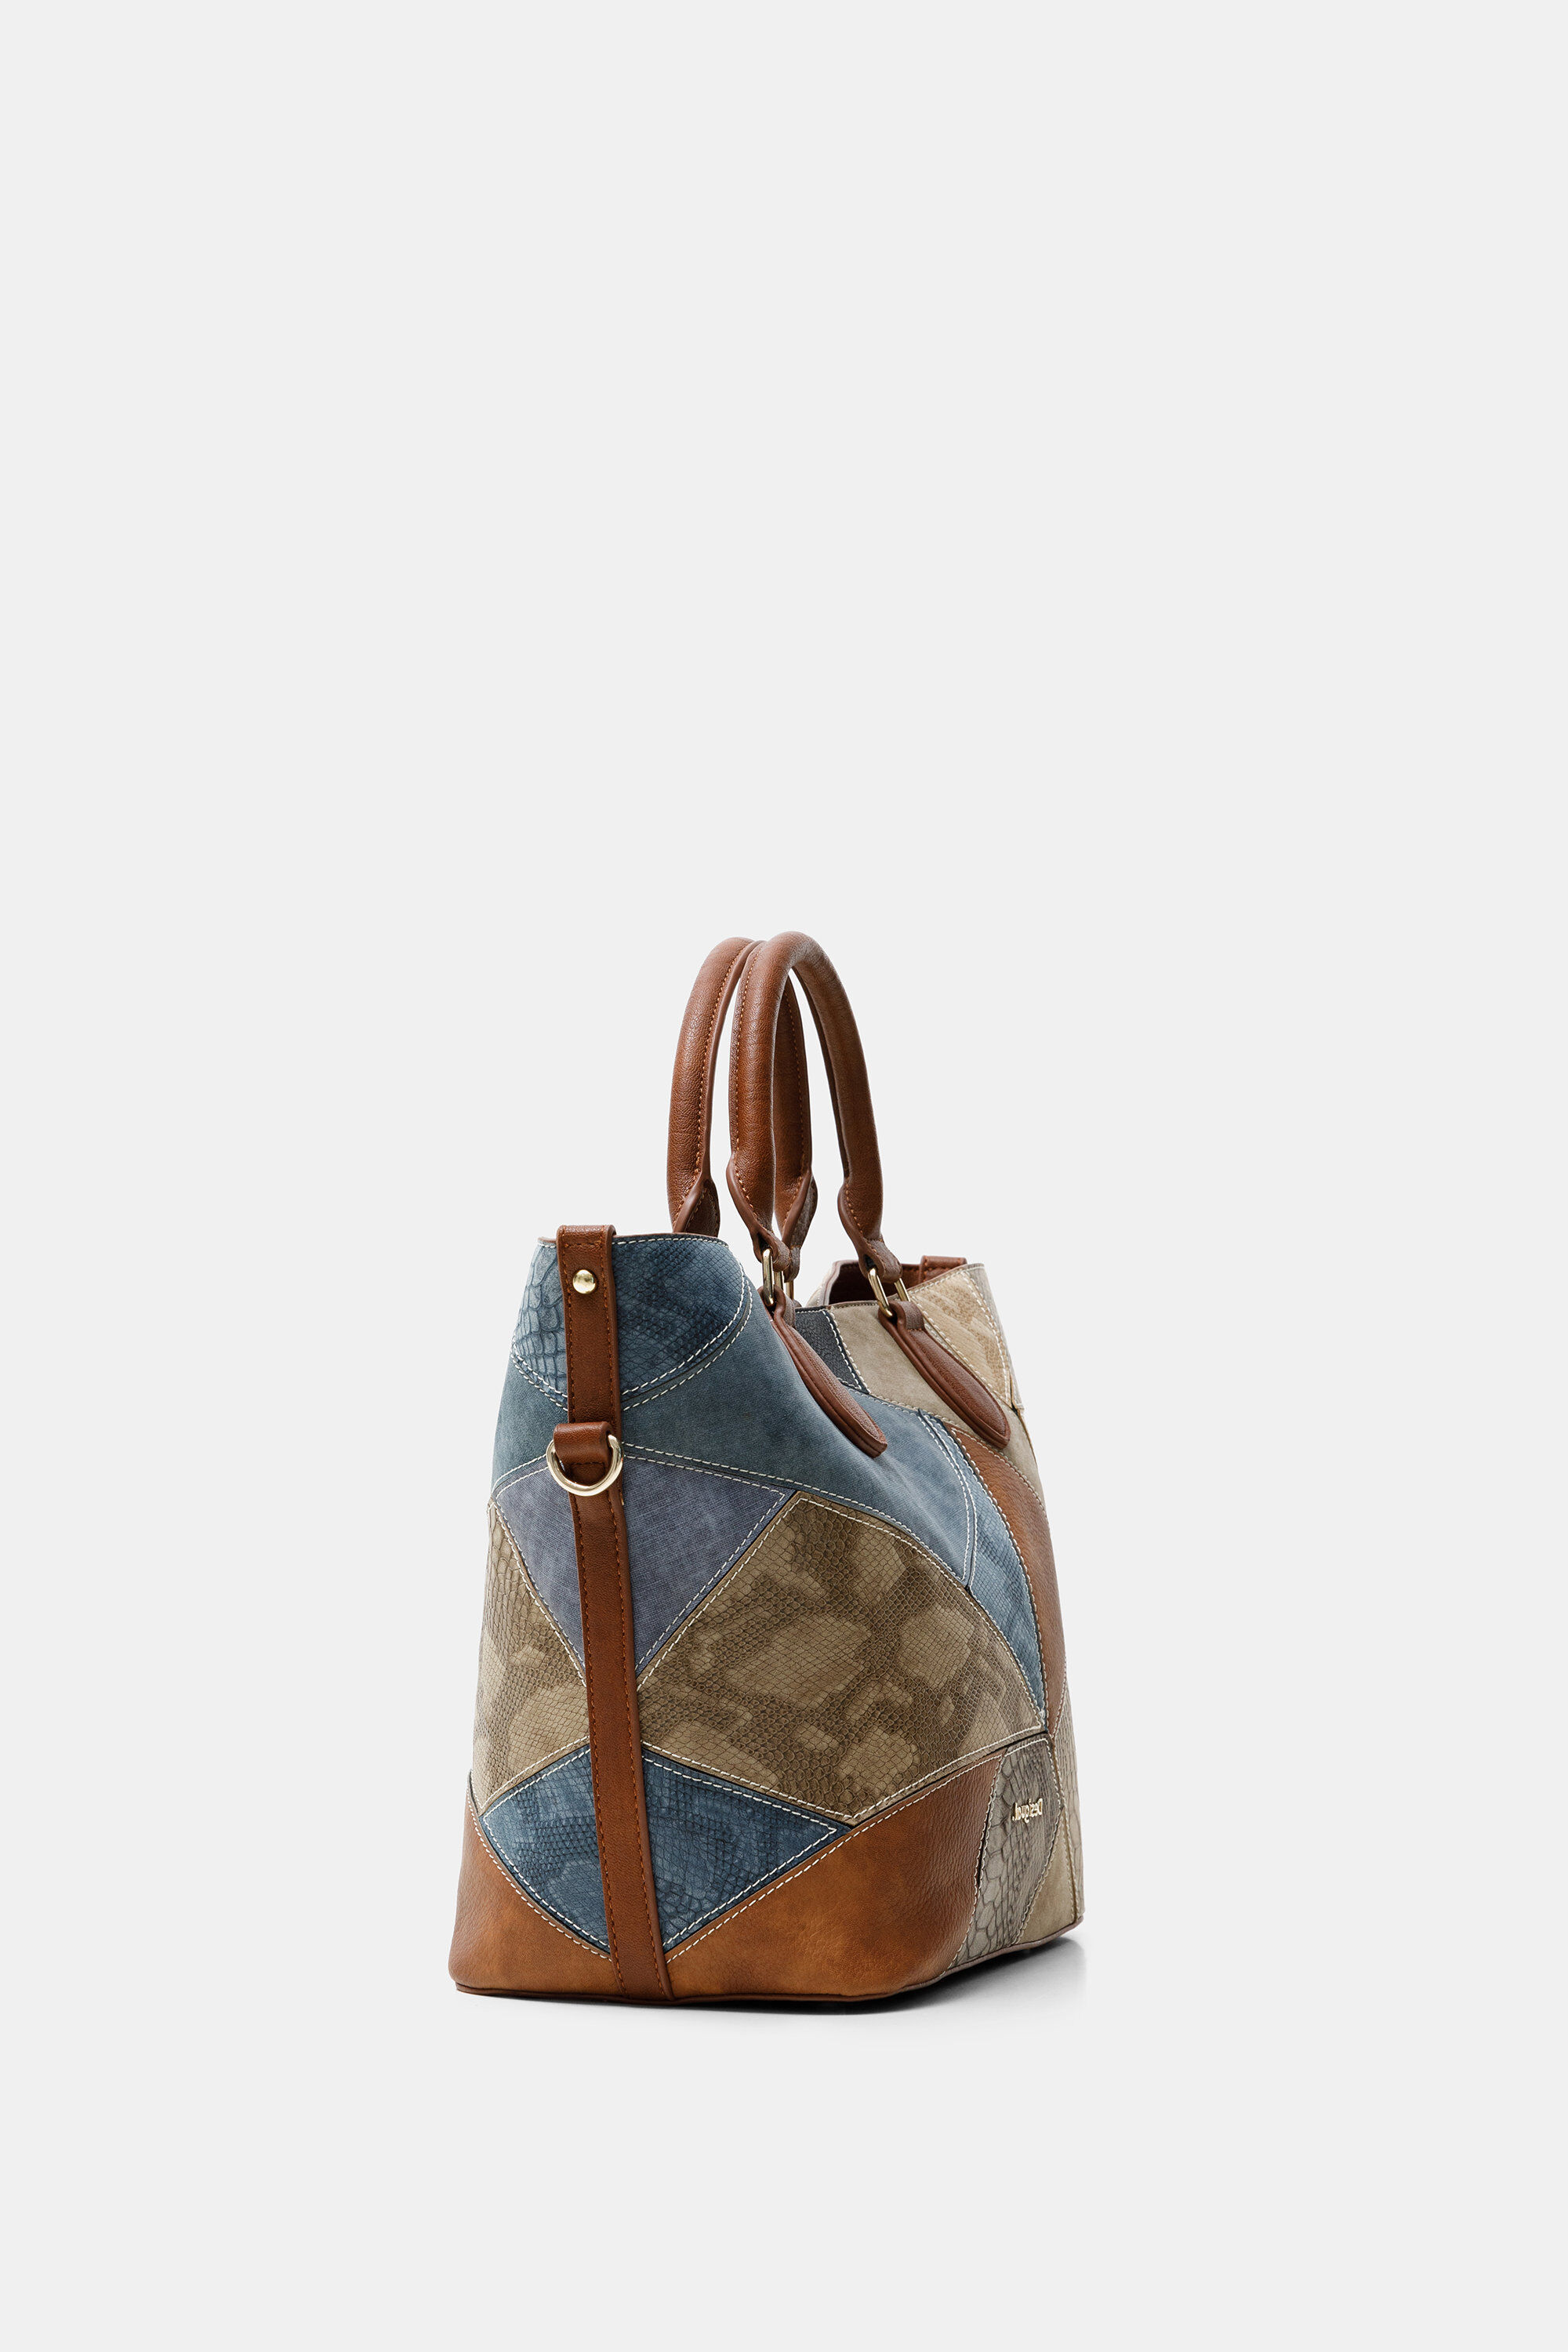 Shopping bag reptile patch | Desigual.com